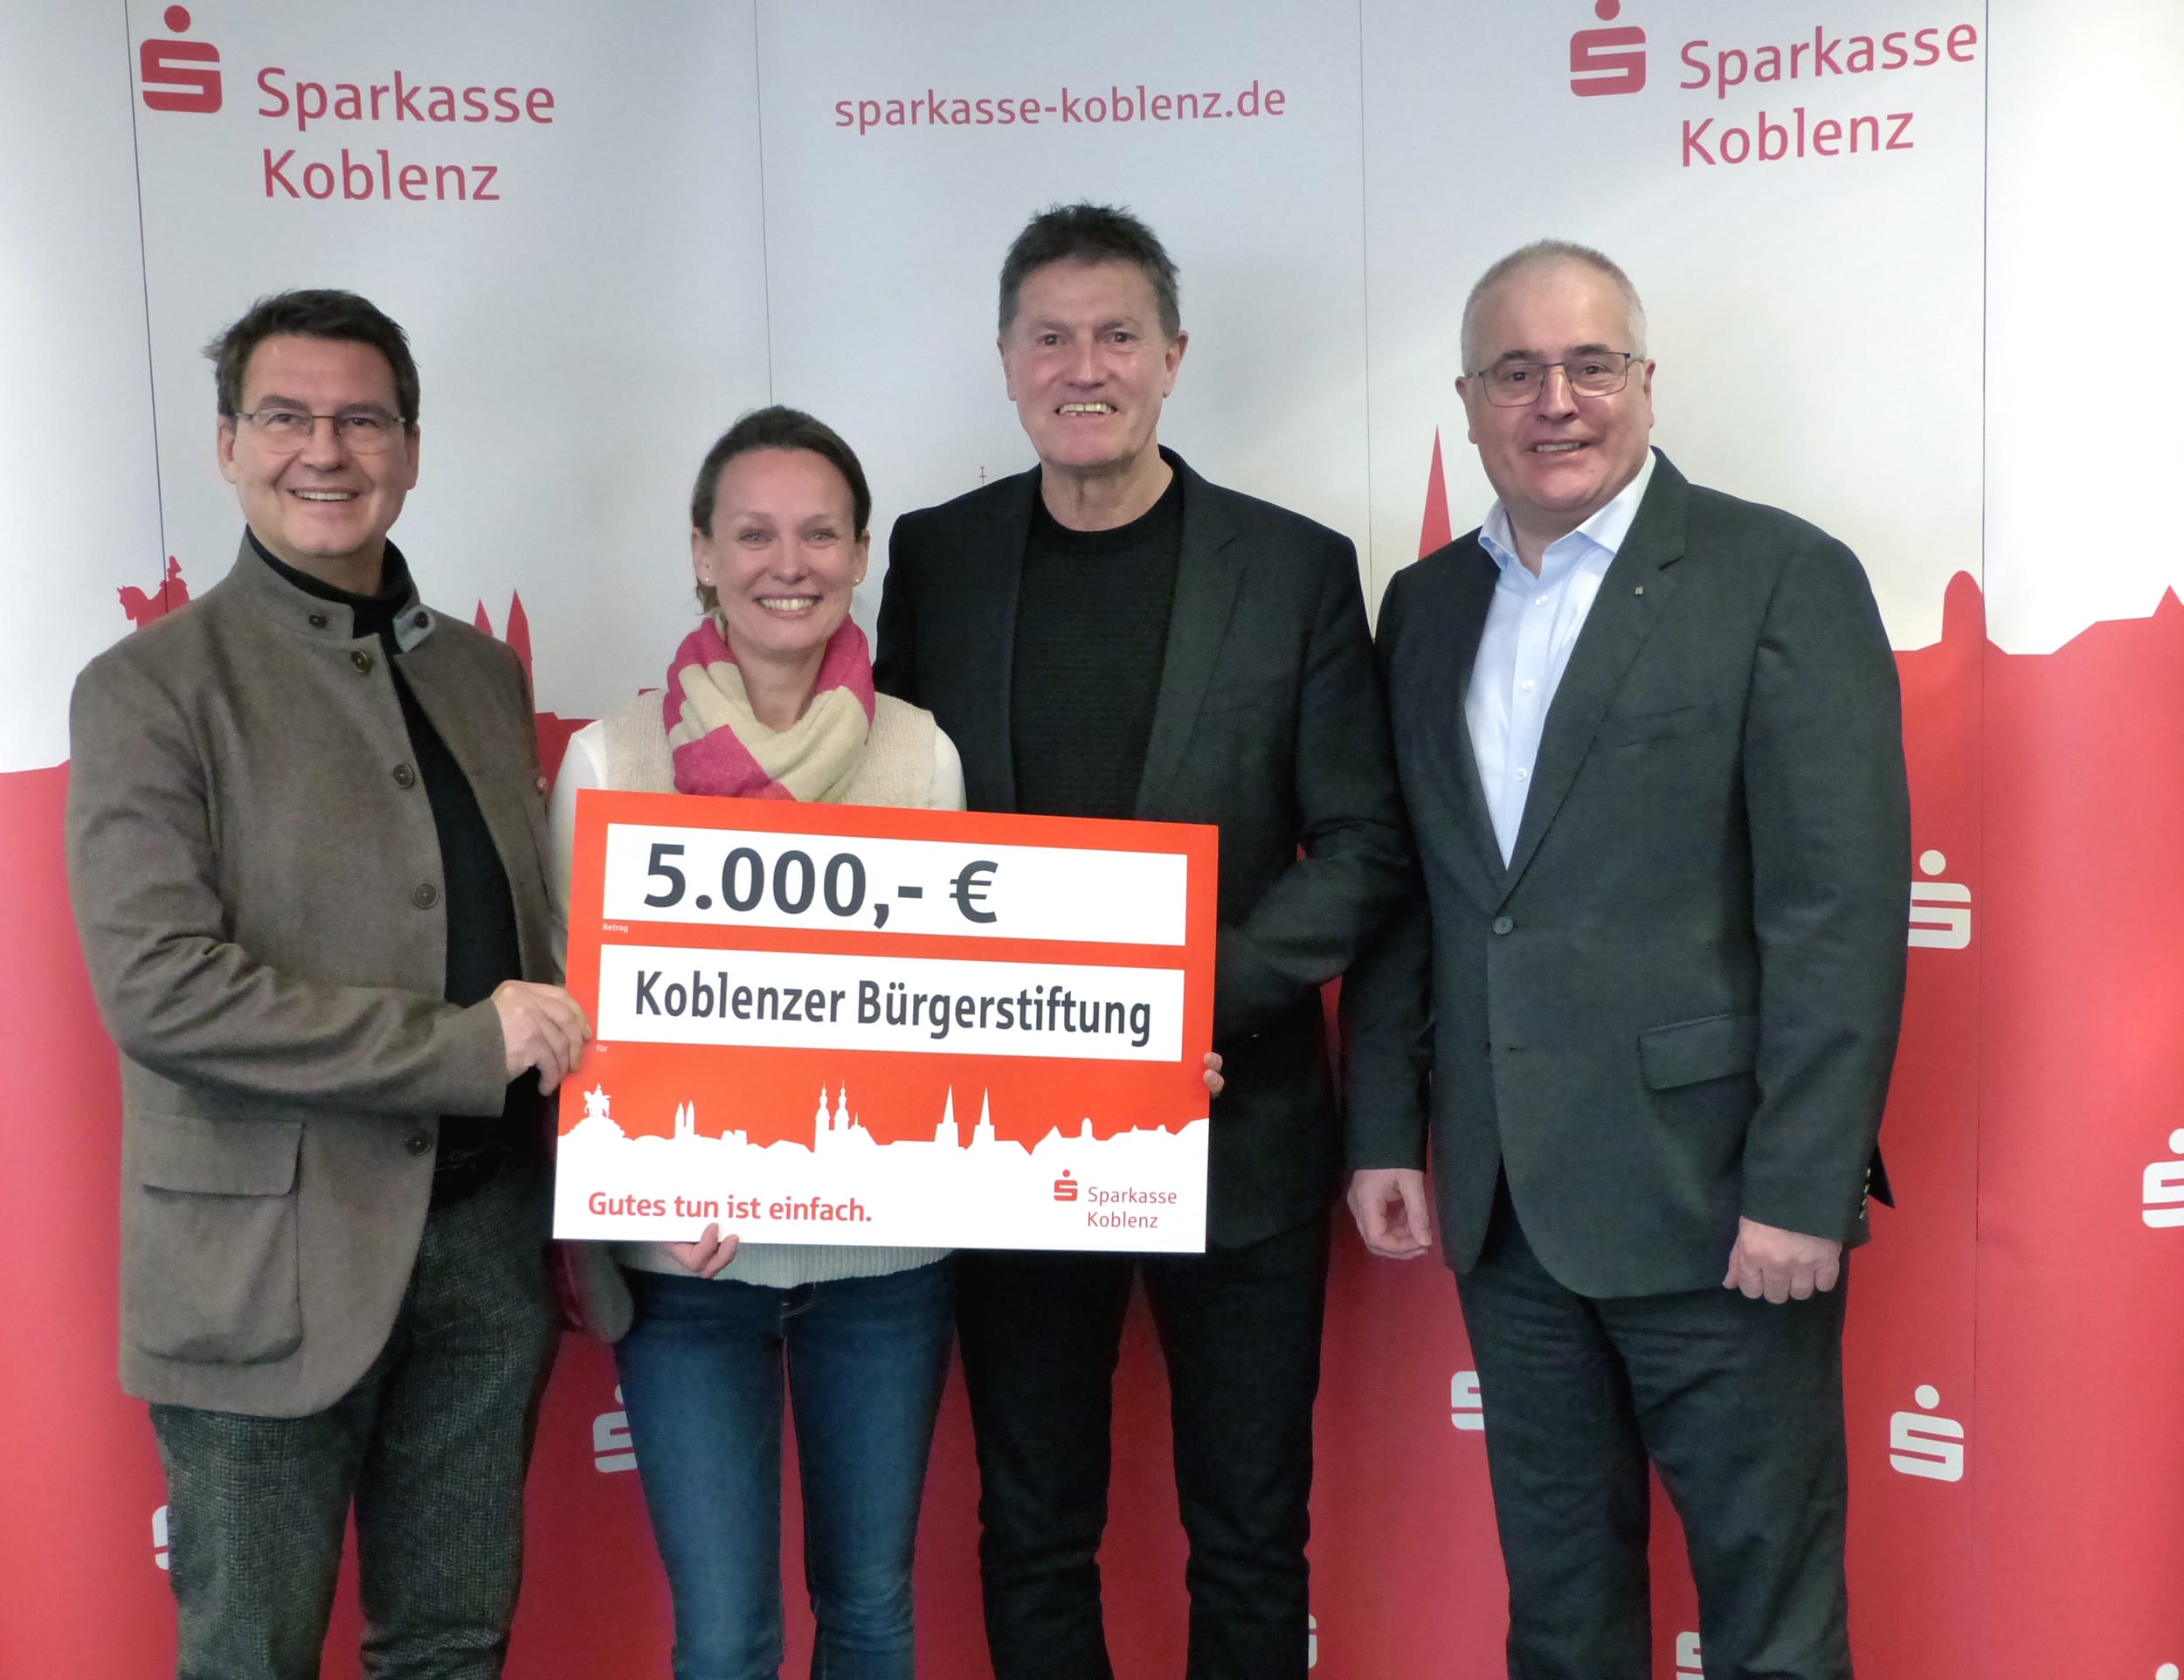 Sparkasse Koblenz unterstützt KoblenzerBürgerStiftung mit 5.000 Euro